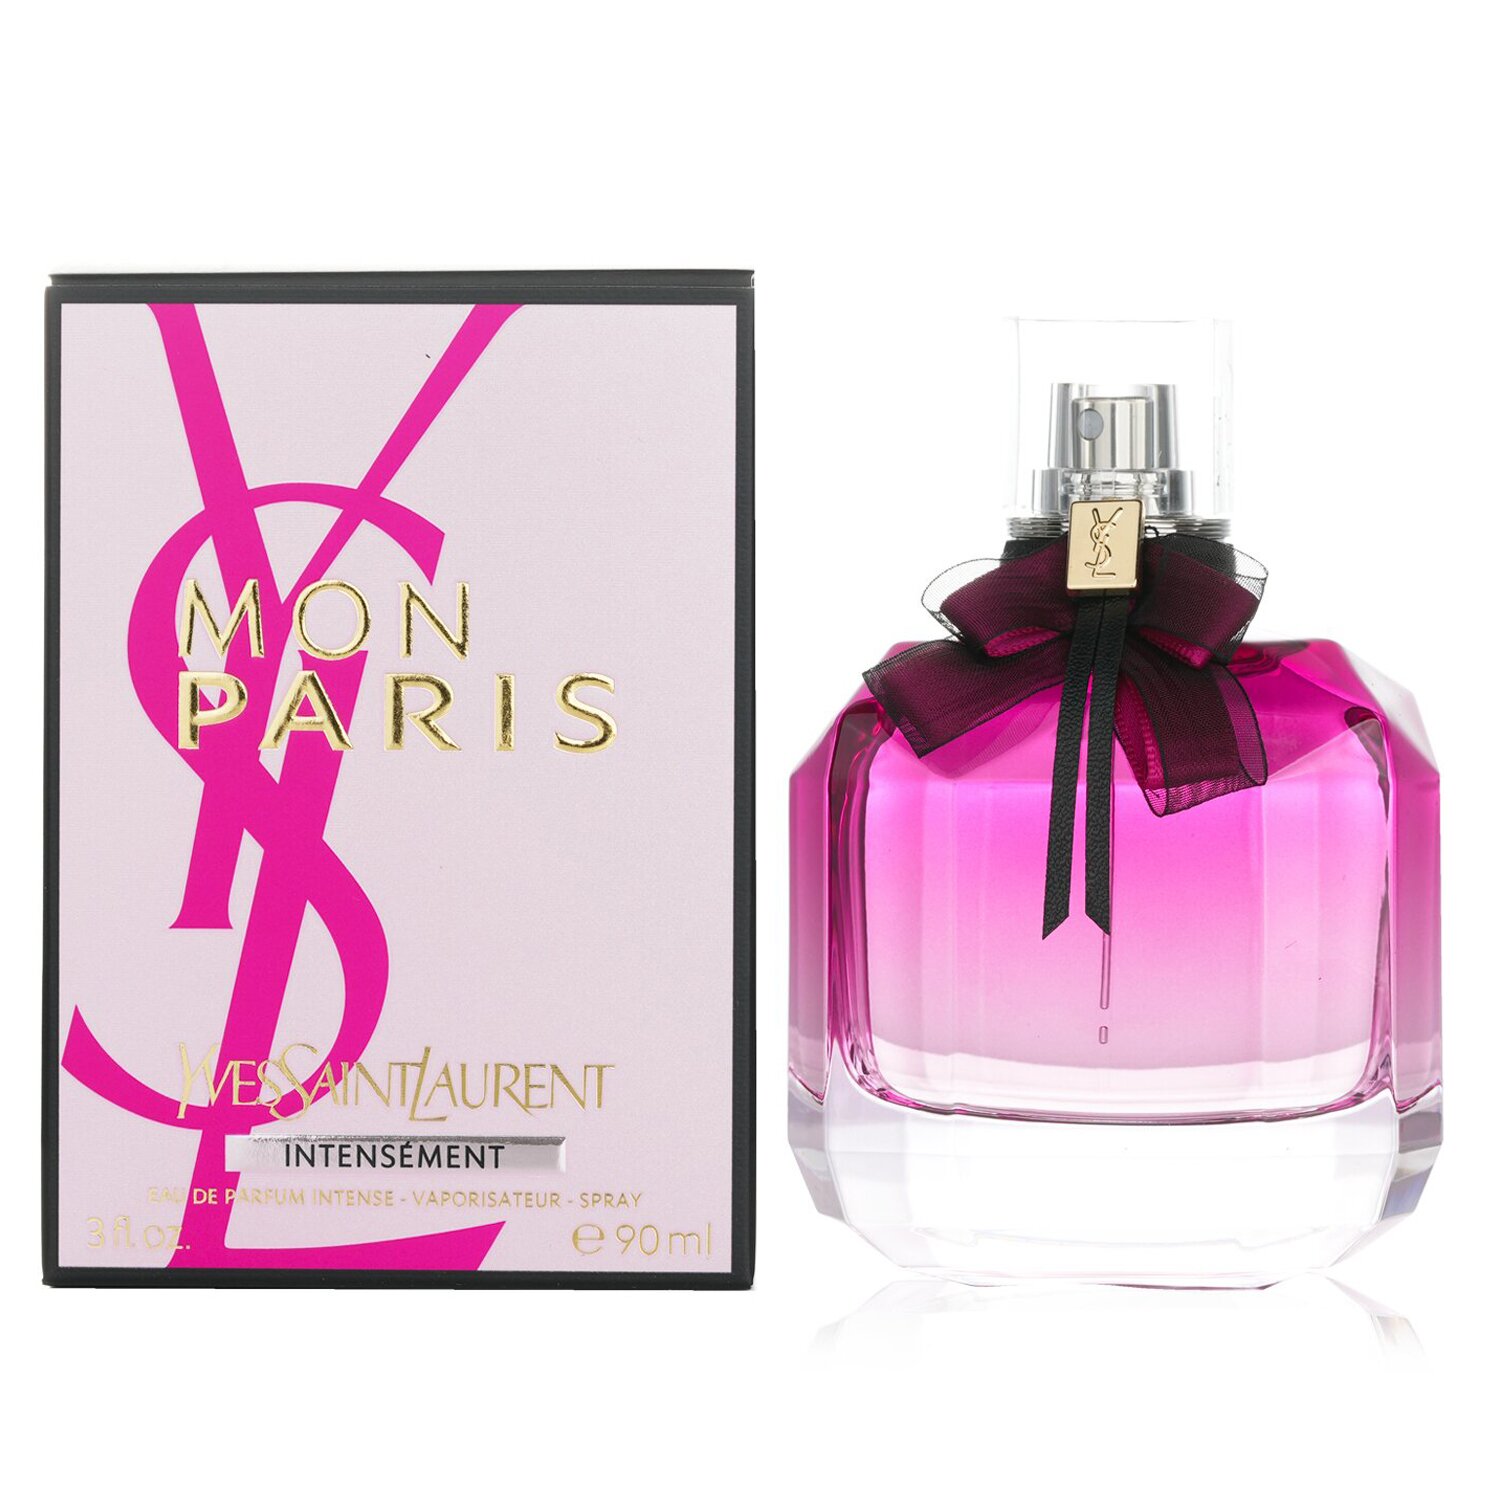 Yves Saint Laurent Mon Paris Intensement Eau De Parfum Intense Spray 90ml/3oz